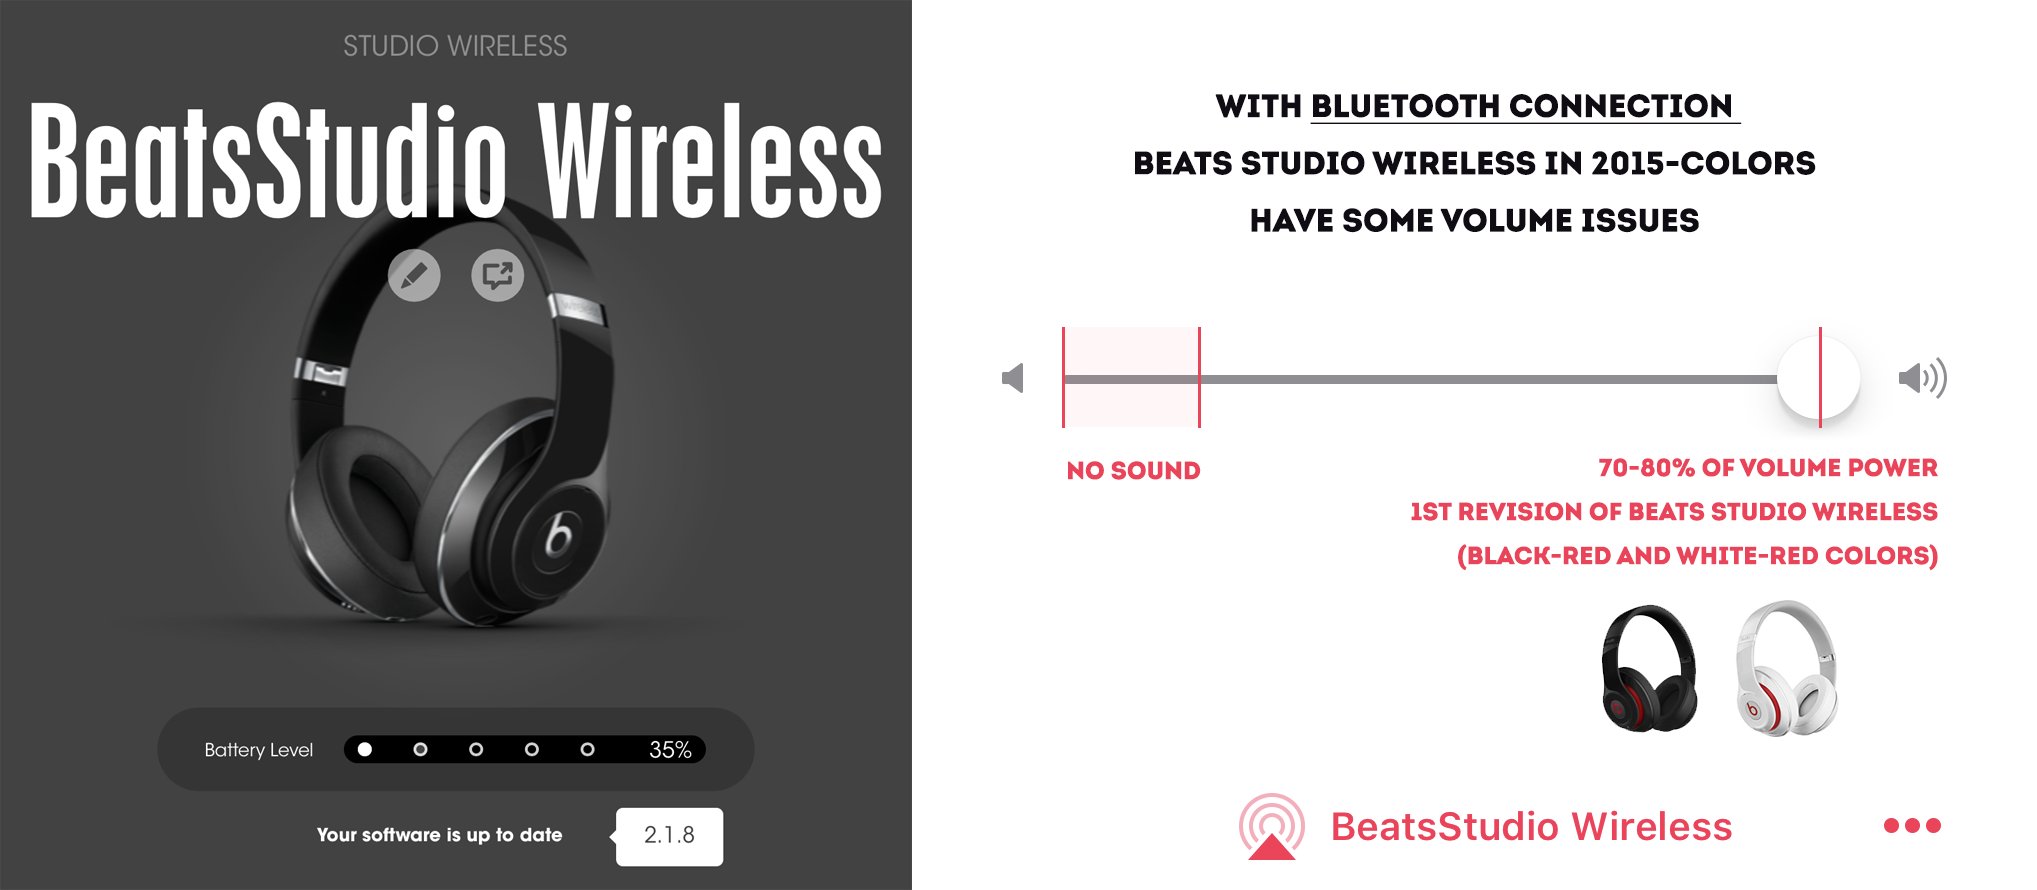 Beats Studio Wireless volume is low 